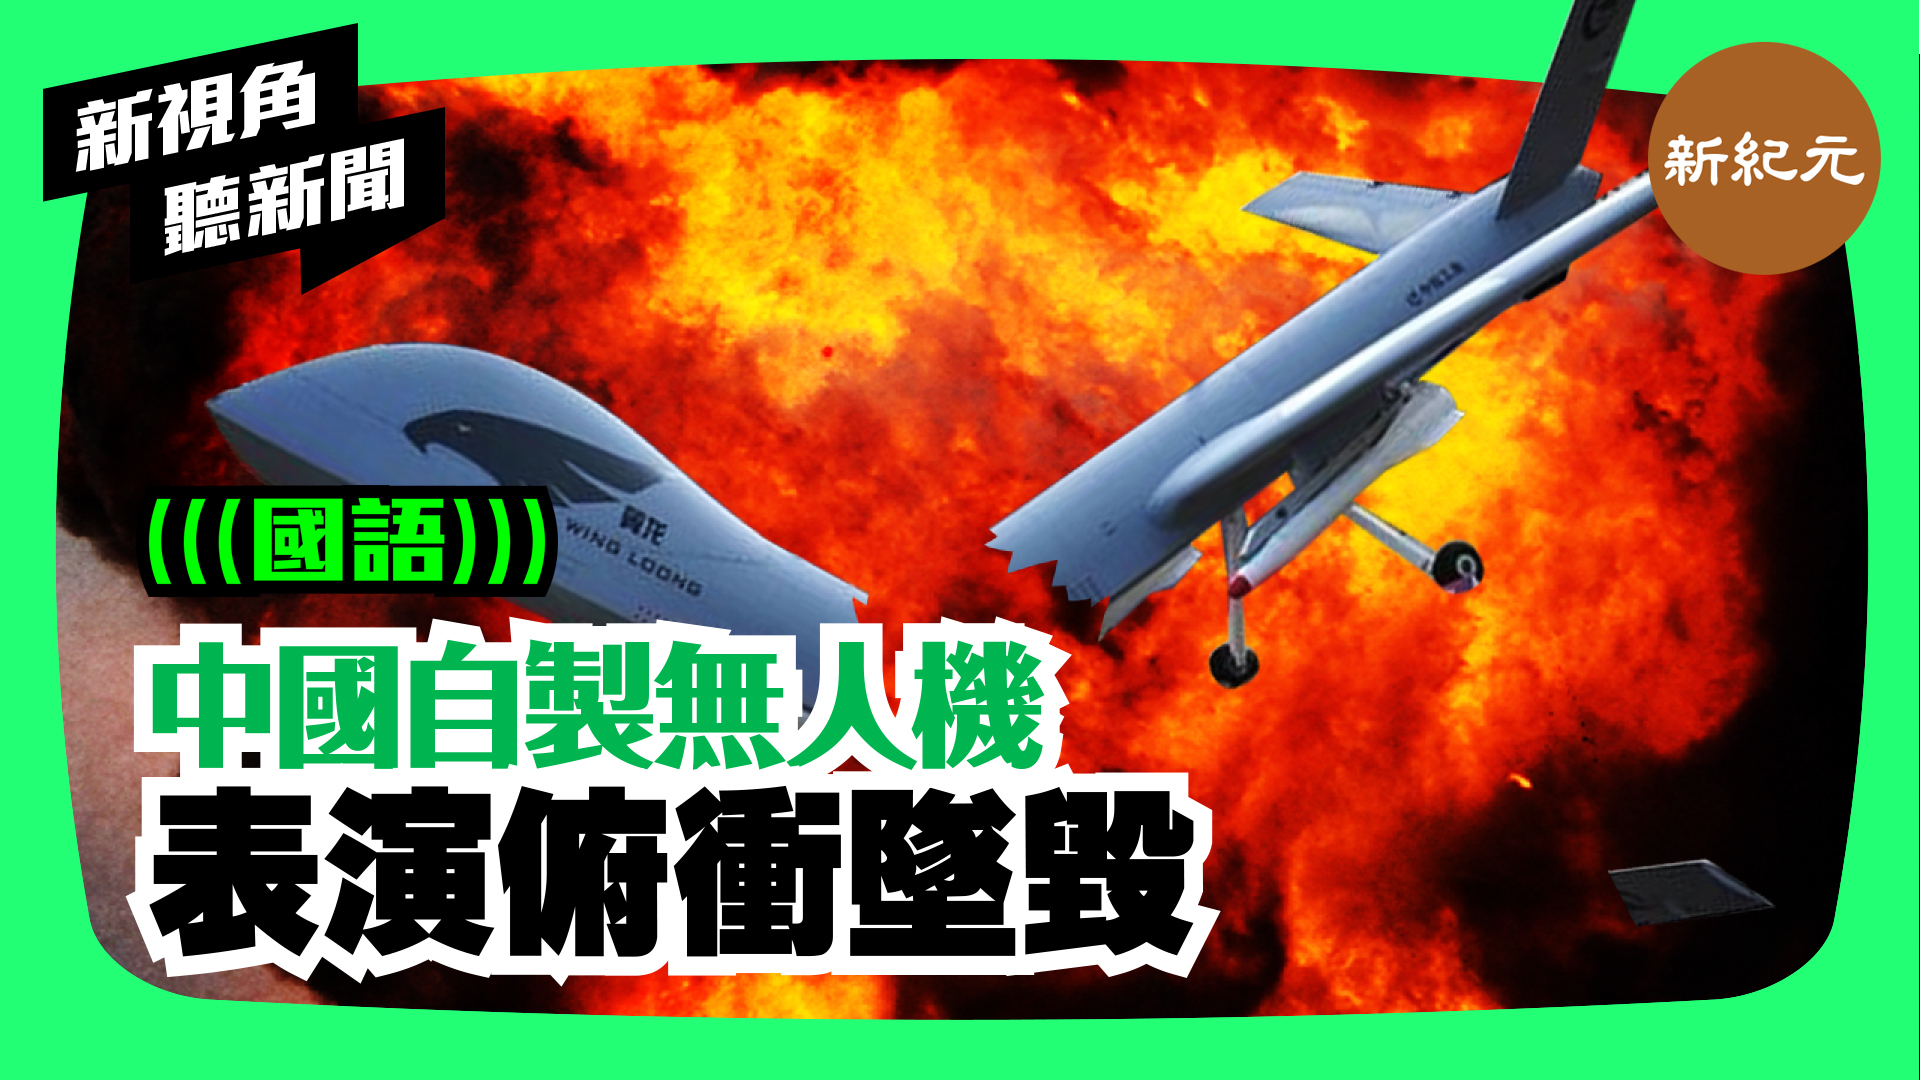 >【新視角聽新聞 #47】中國自製無人機.  表演俯衝墜毀